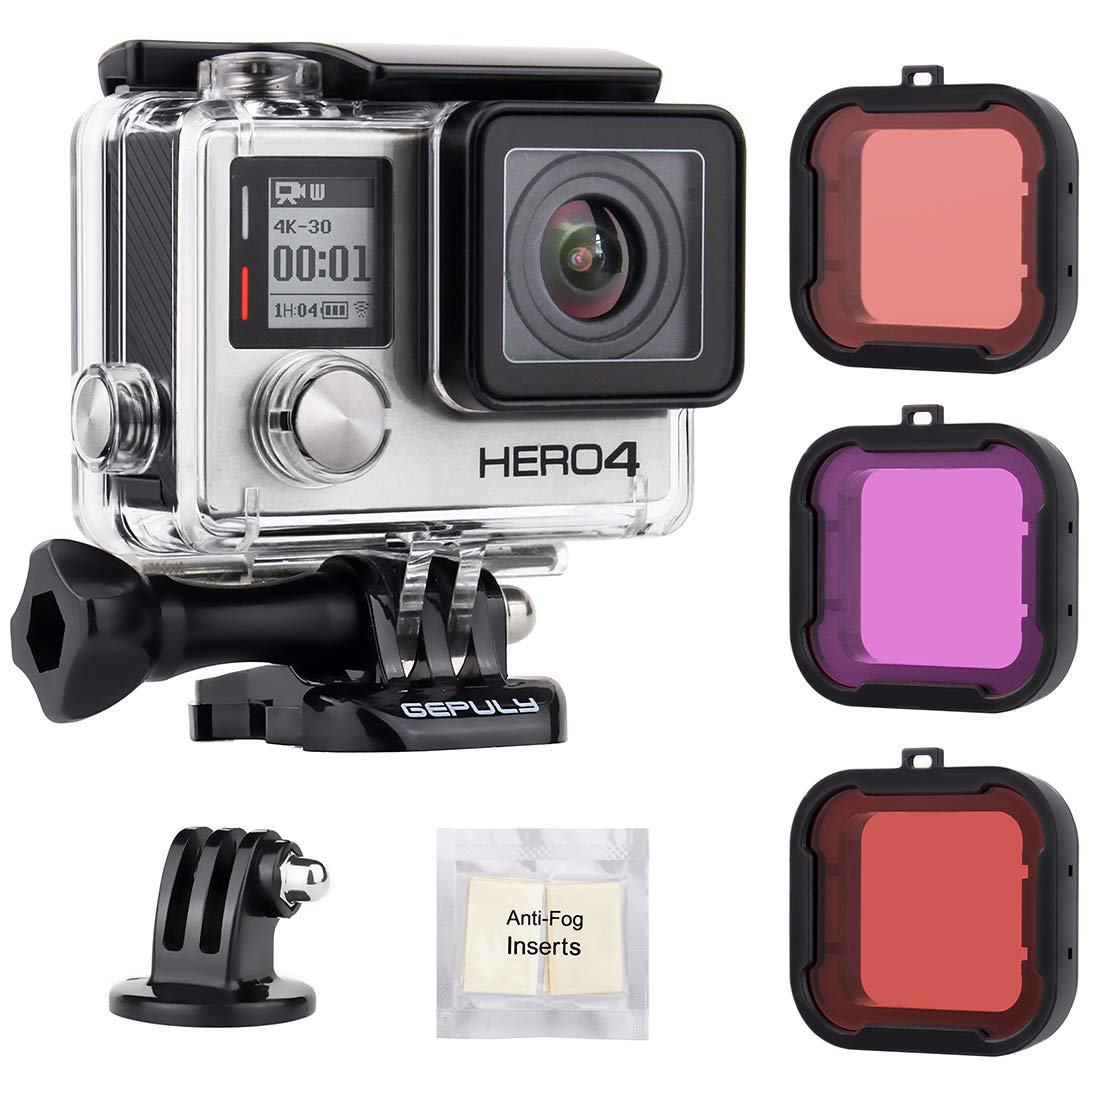 GEPULY Wasserdichtes Standard-Gehäuse mit Tauchfiltern für GoPro Hero 4, Hero 3+, Hero3 Action-Kameras – 40 m Unterwasserfotografie – mit roten, hellroten, magentafarbenen Filtern